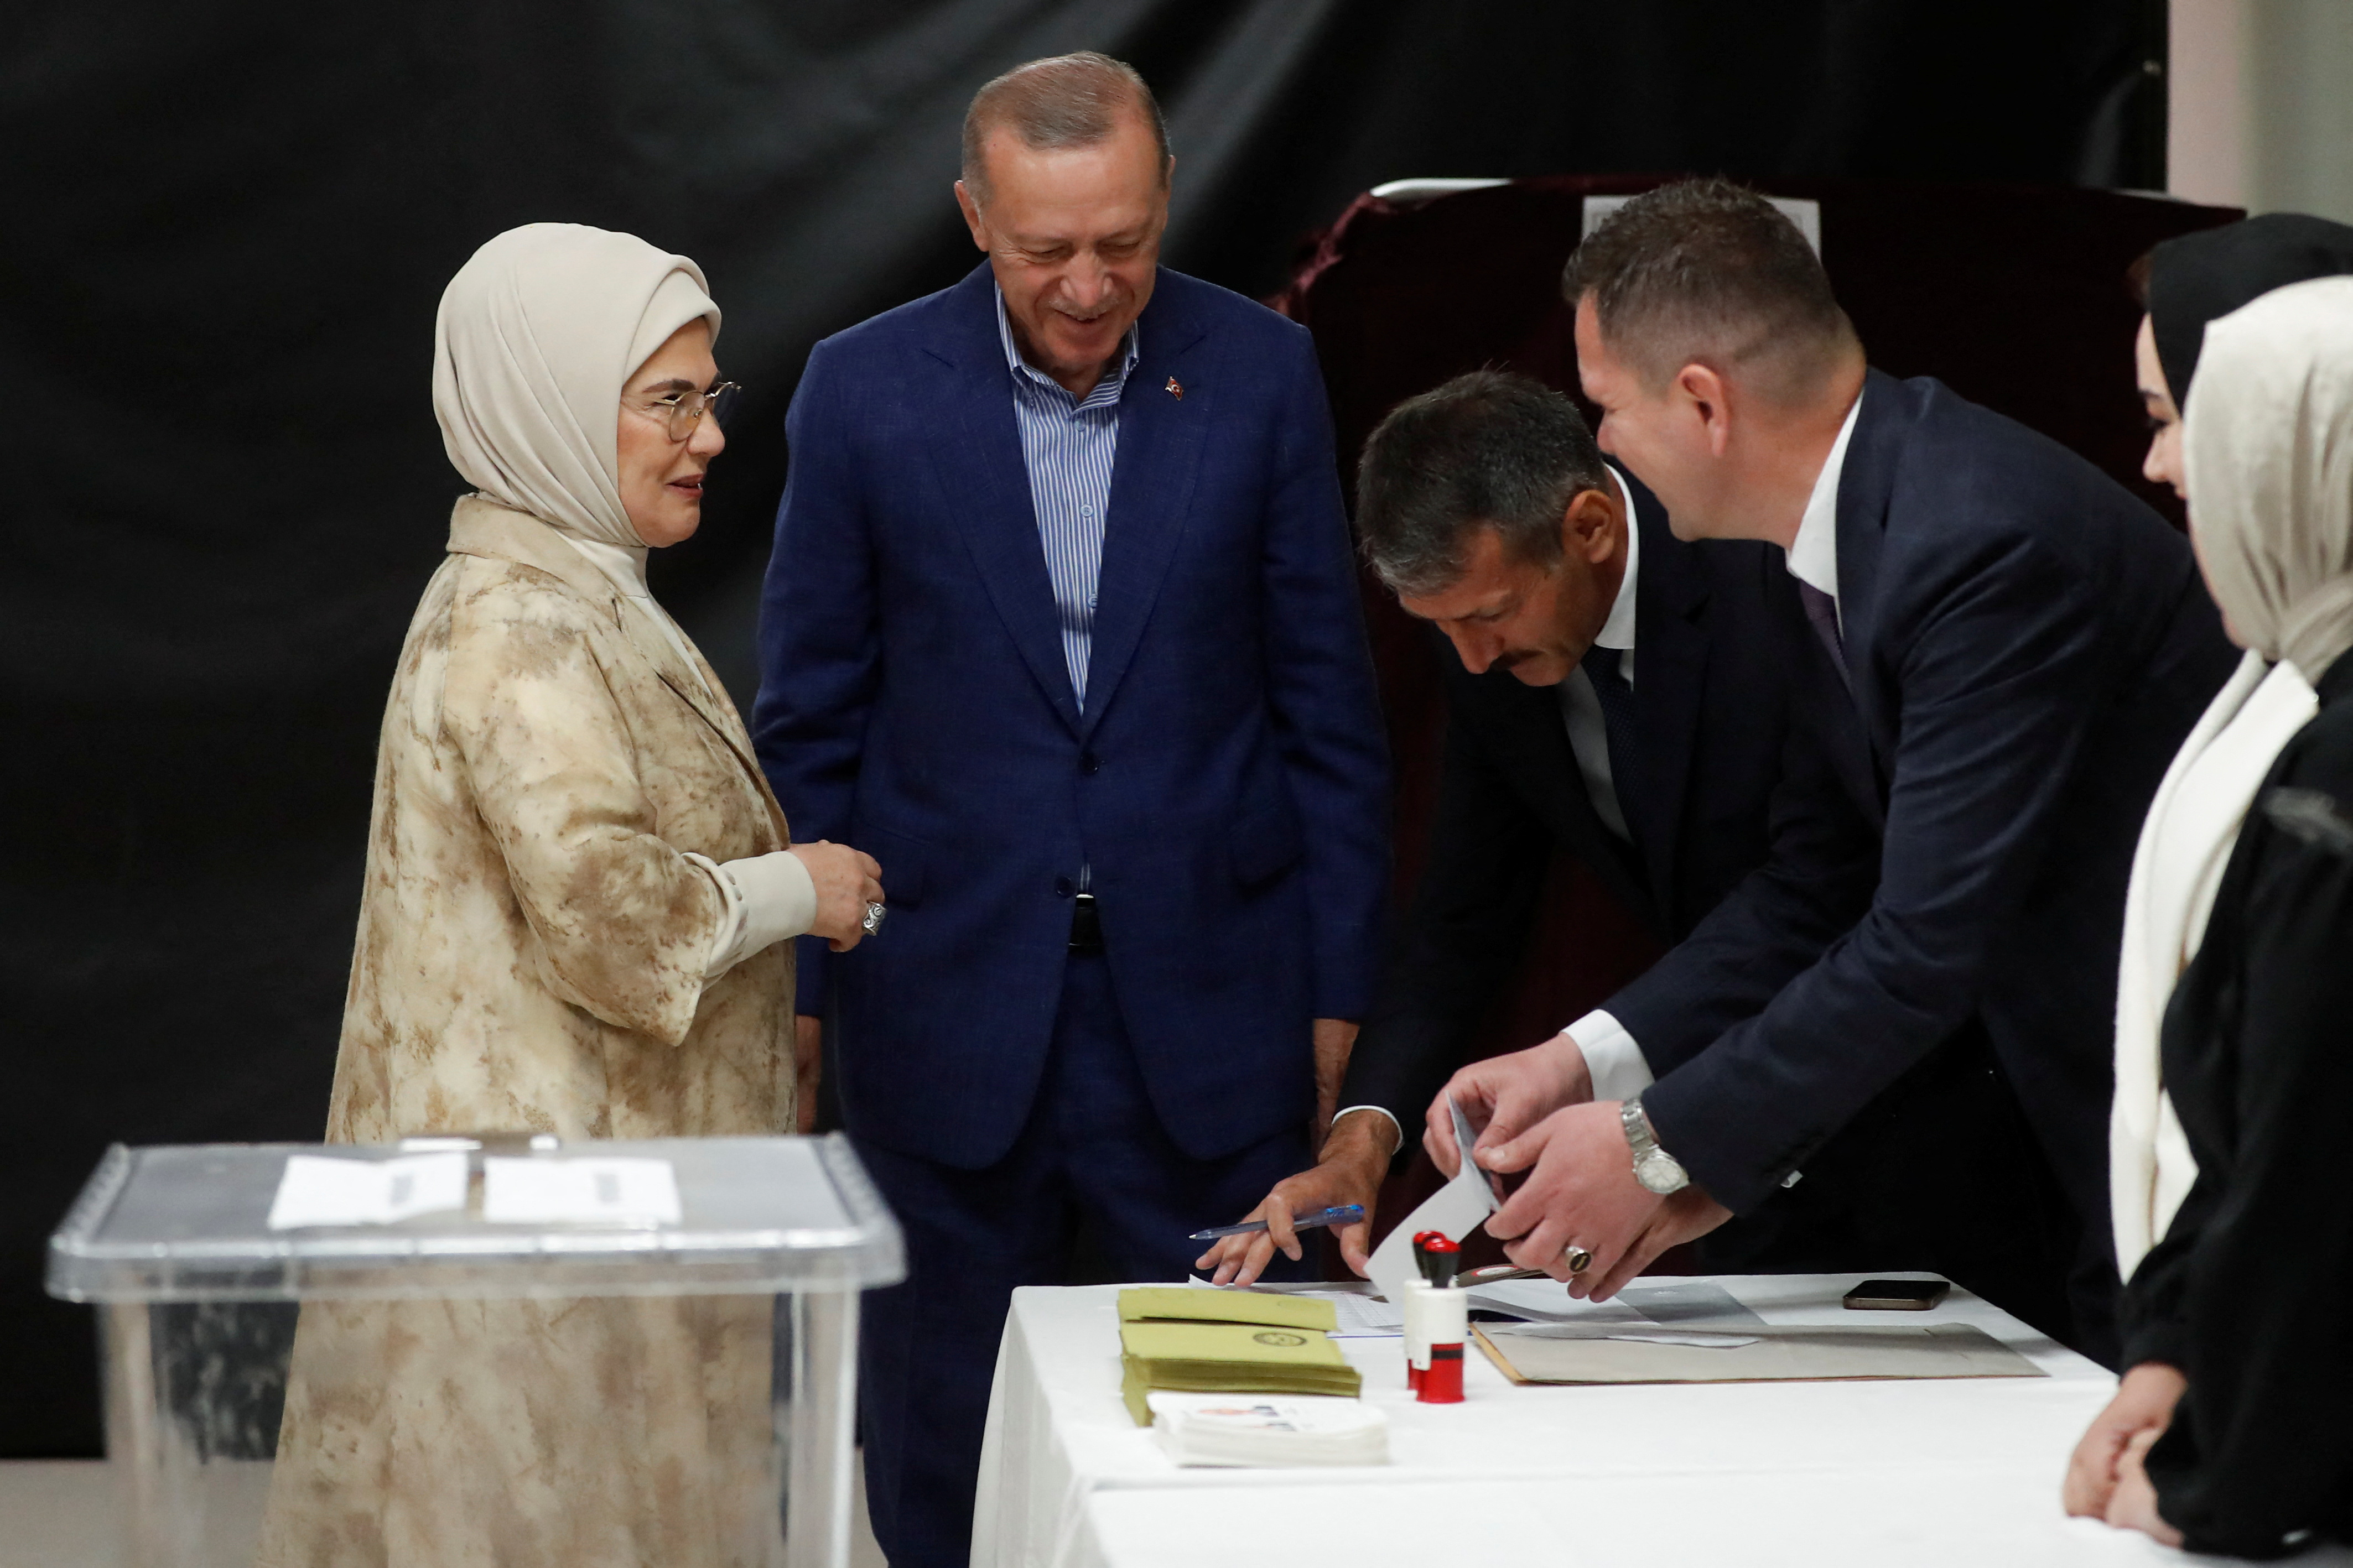 El presidente turco Tayyip Erdogan y su esposa Emine Erdogan votan en un colegio electoral durante la segunda vuelta de las elecciones presidenciales en Estambul, Turquía 28 de mayo 2023 (REUTERS)